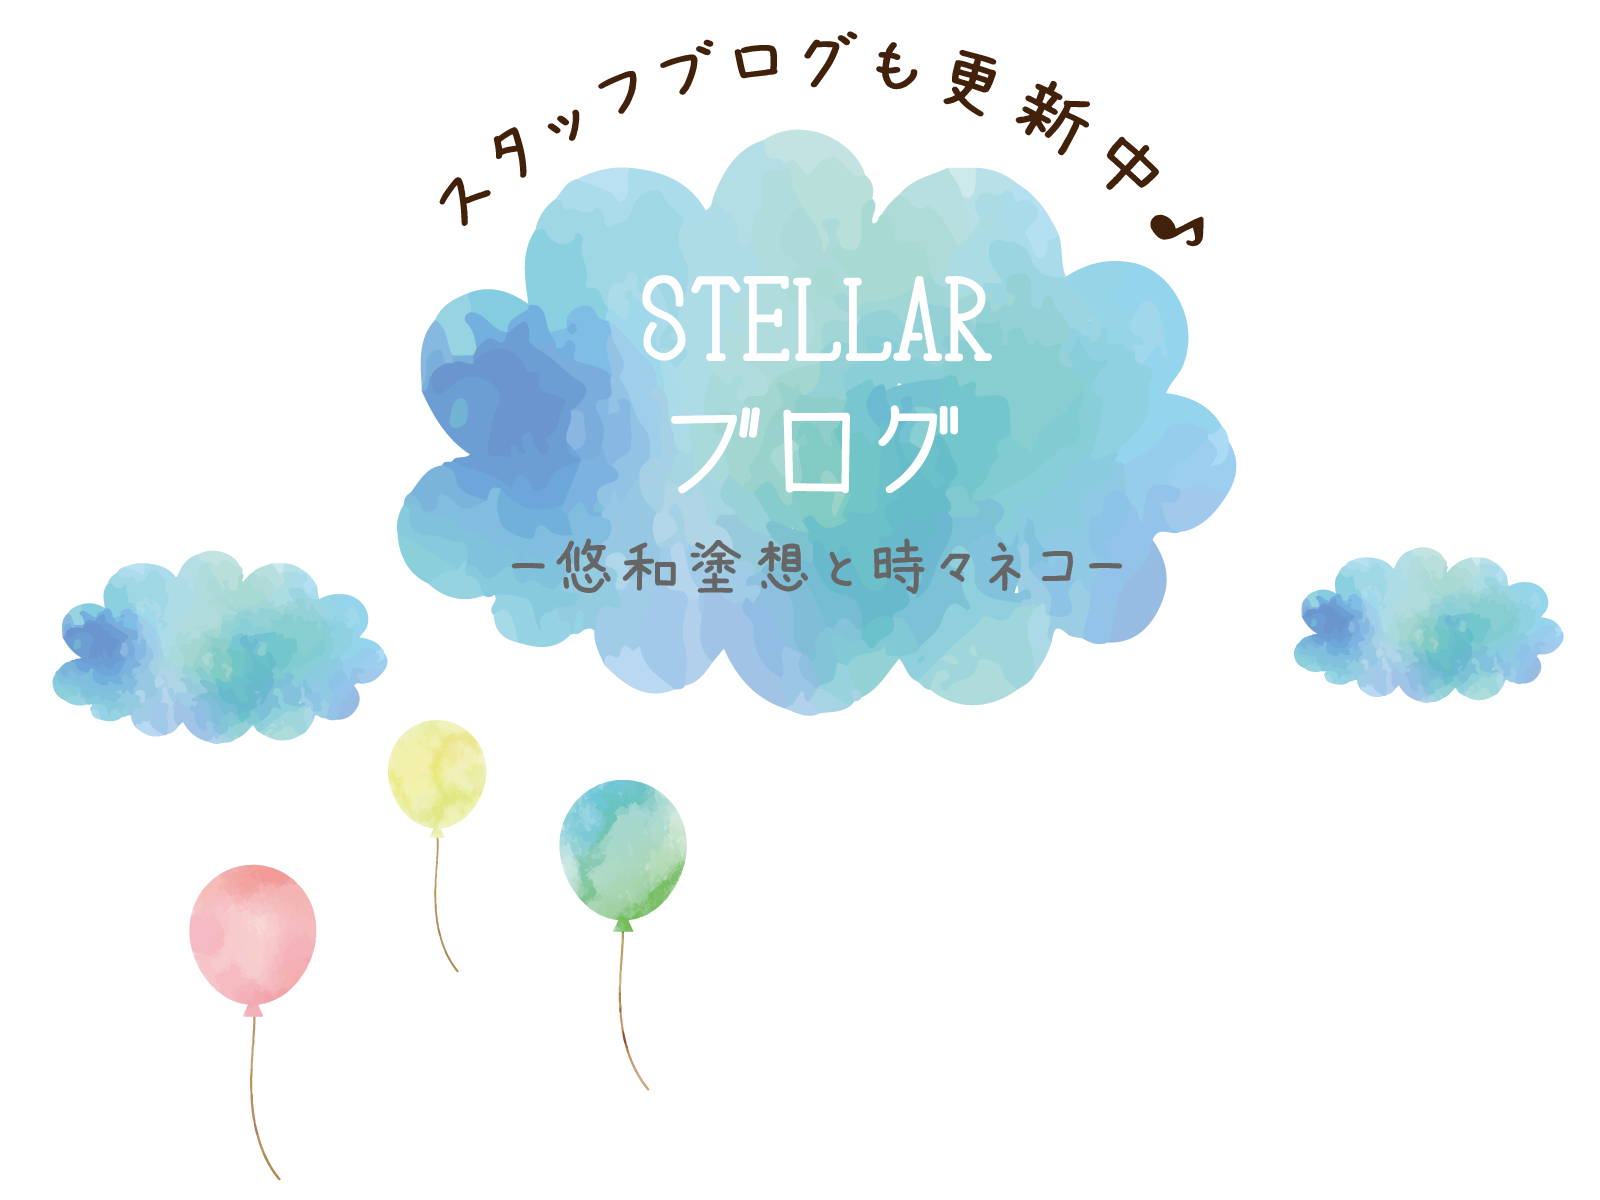 株式会社stellar 公式ホームページ